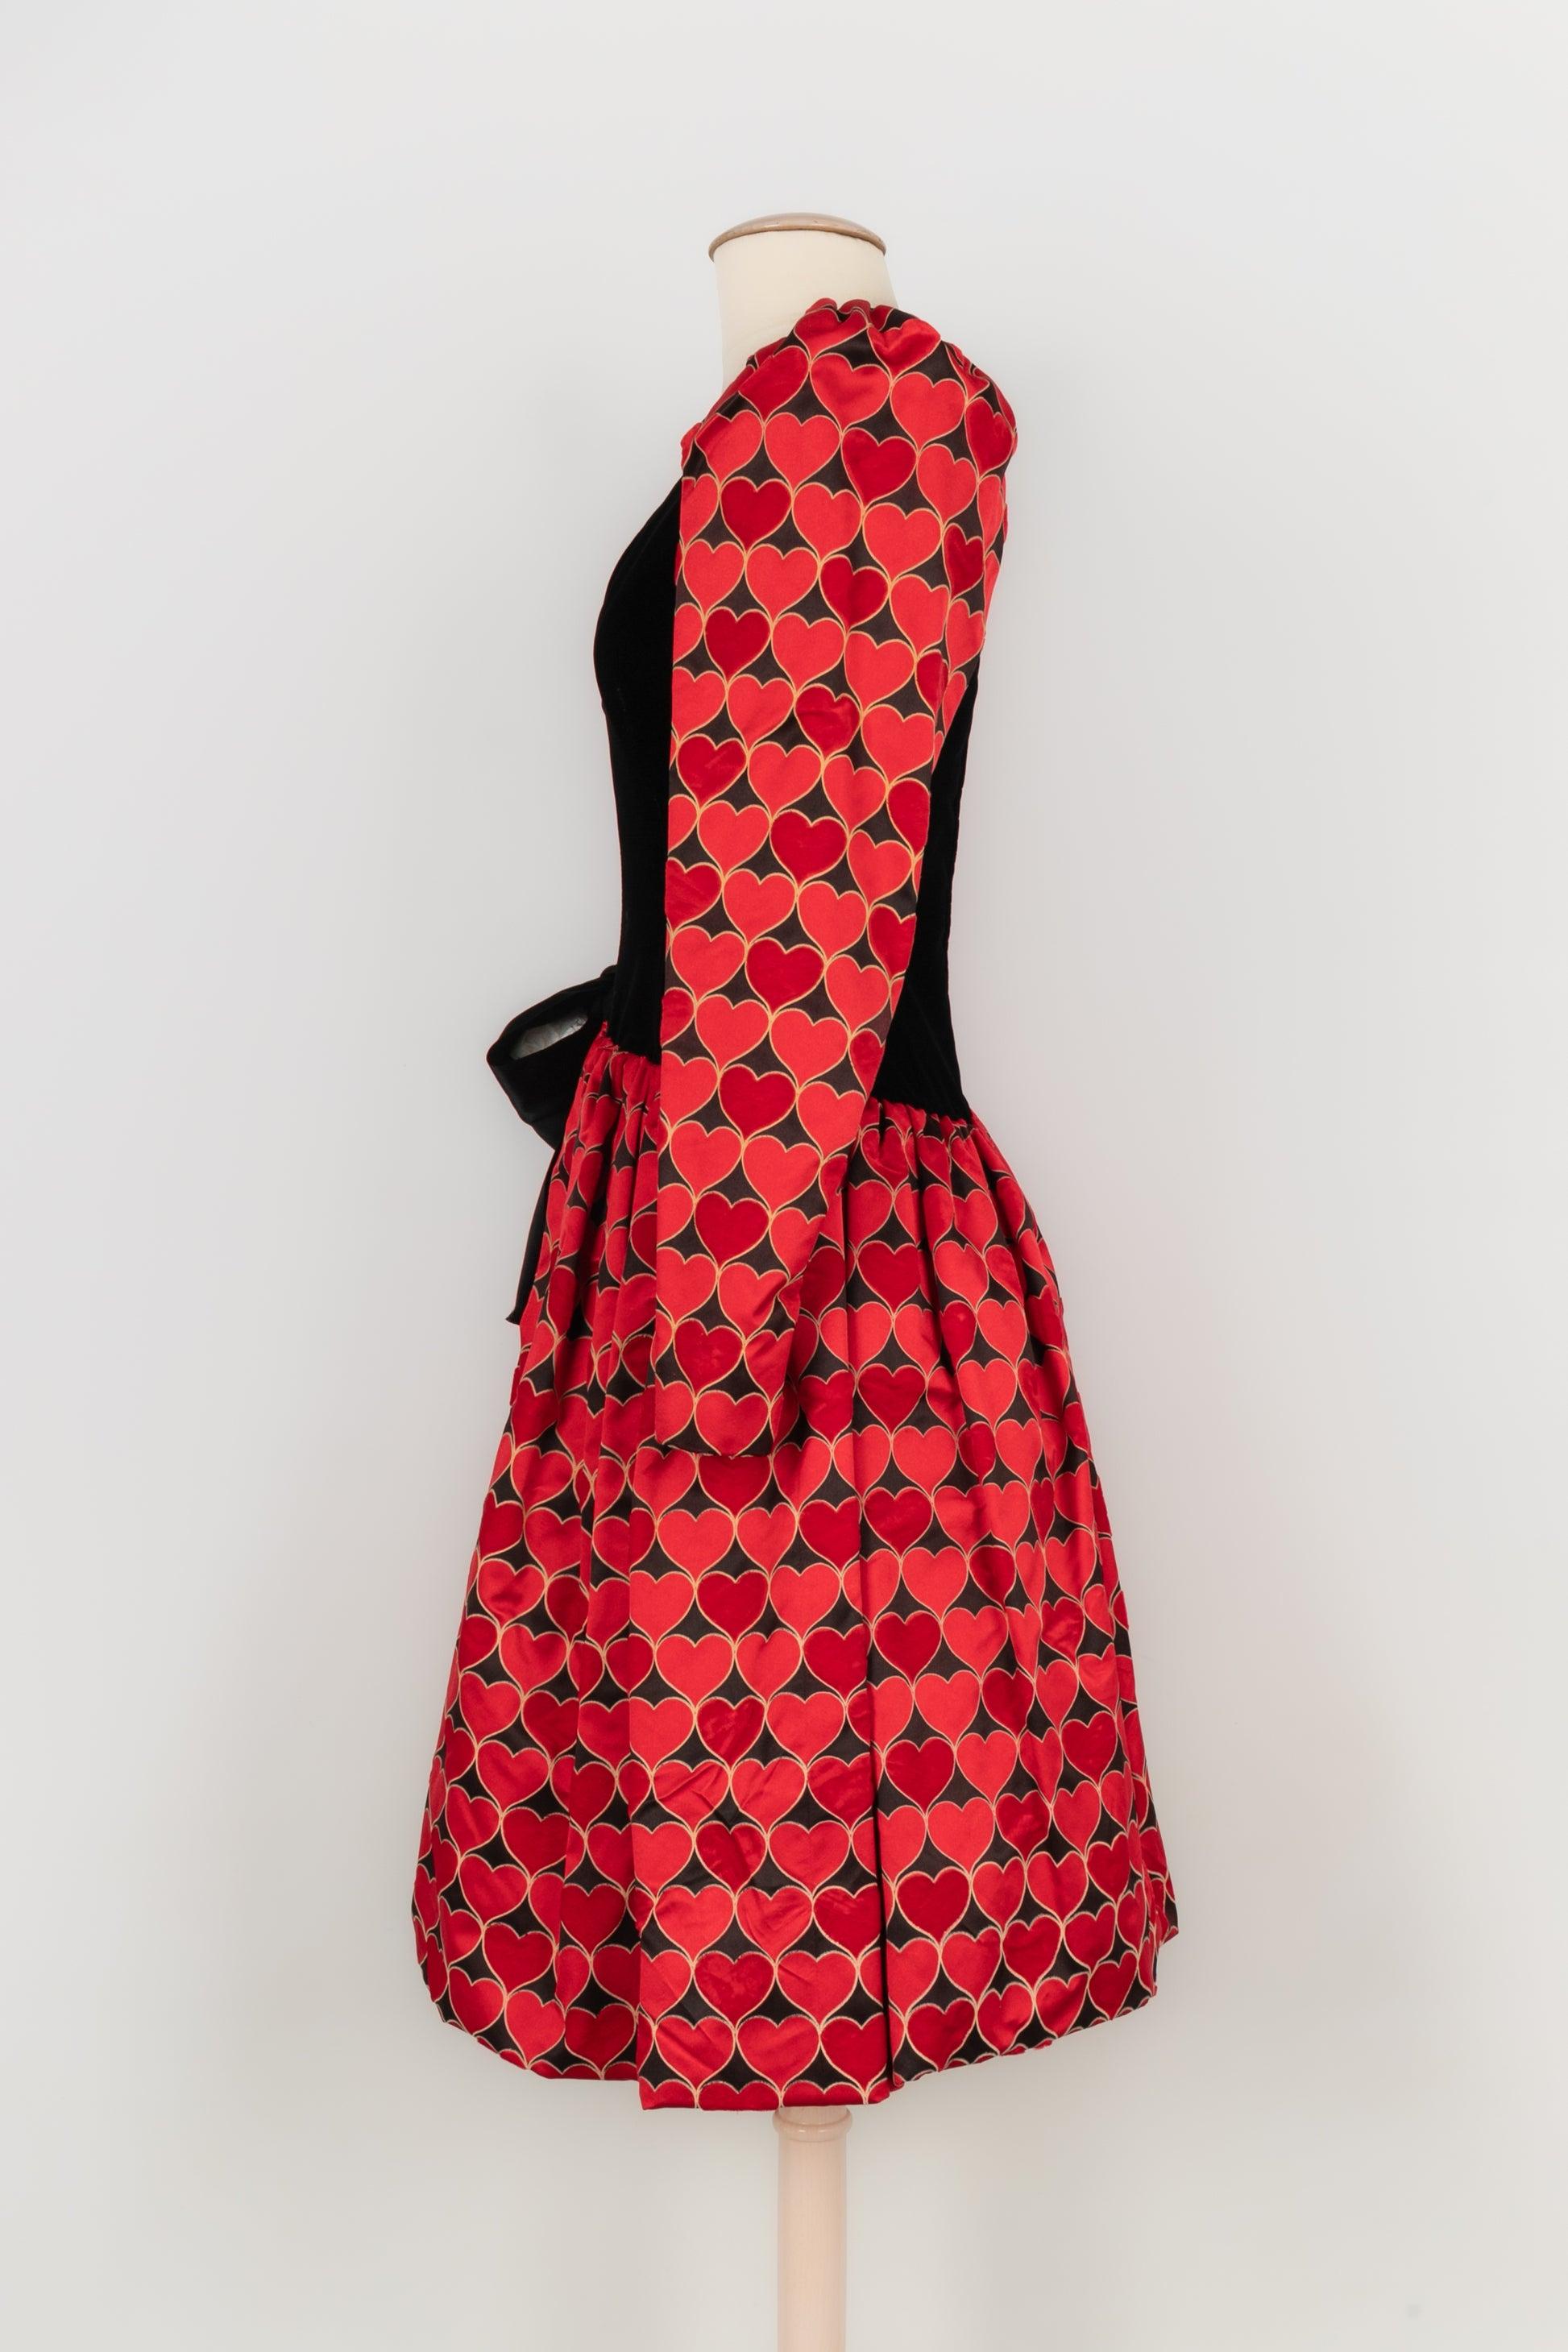 Givenchy - (Fabriqué en France) Robe Haute Couture en satin et velours noir décorée de cœurs rouges et d'un grand nœud en satin noir. Pas de Label de taille ni de composition, il convient à un 34FR/36FR. Pièce des années 1980.

Informations